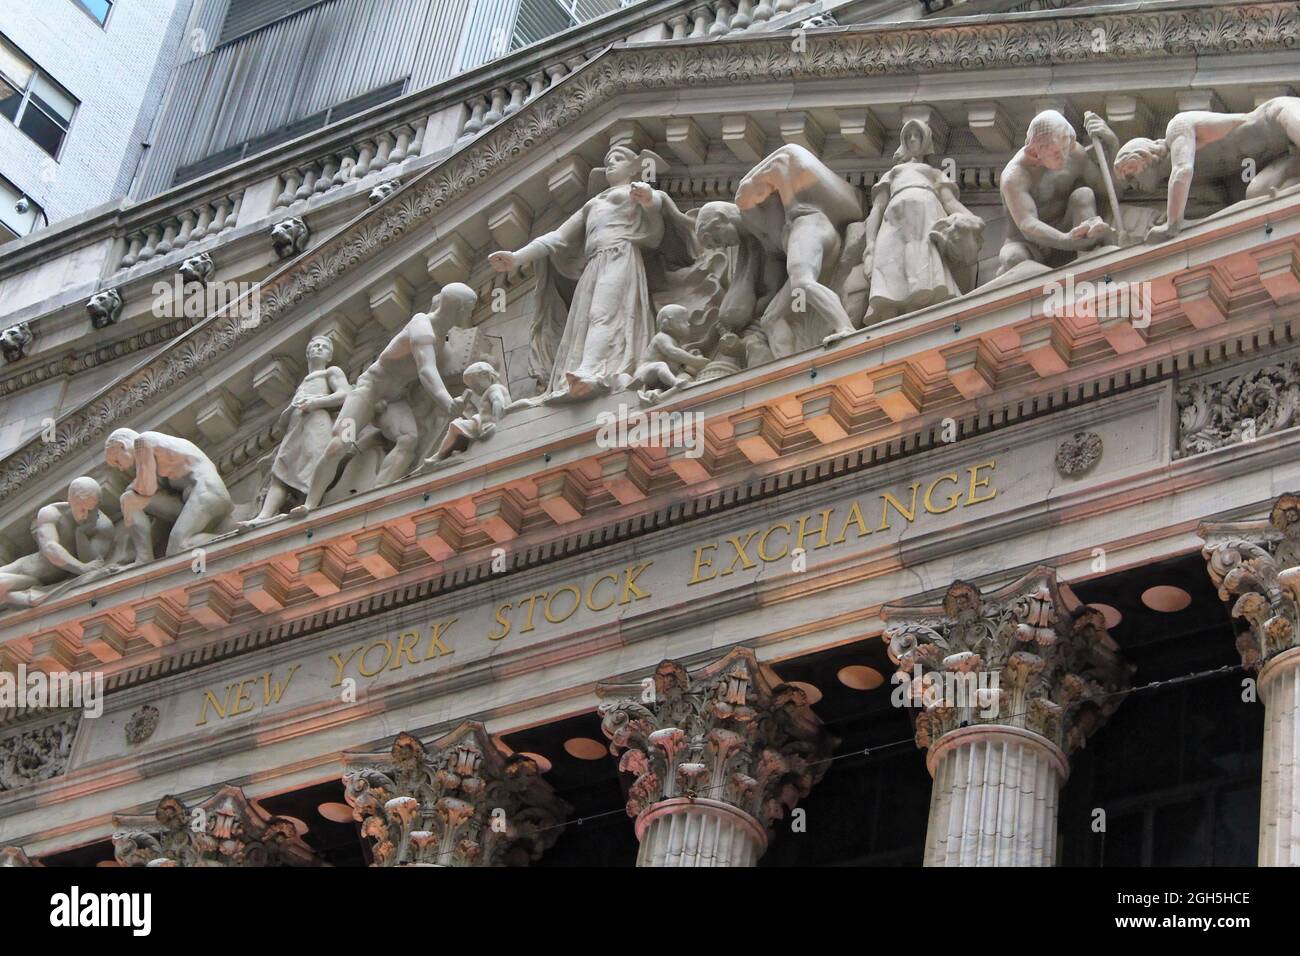 New York, États-Unis - 21 novembre 2010 : entrée de la Bourse de New York de Wall Street Banque D'Images